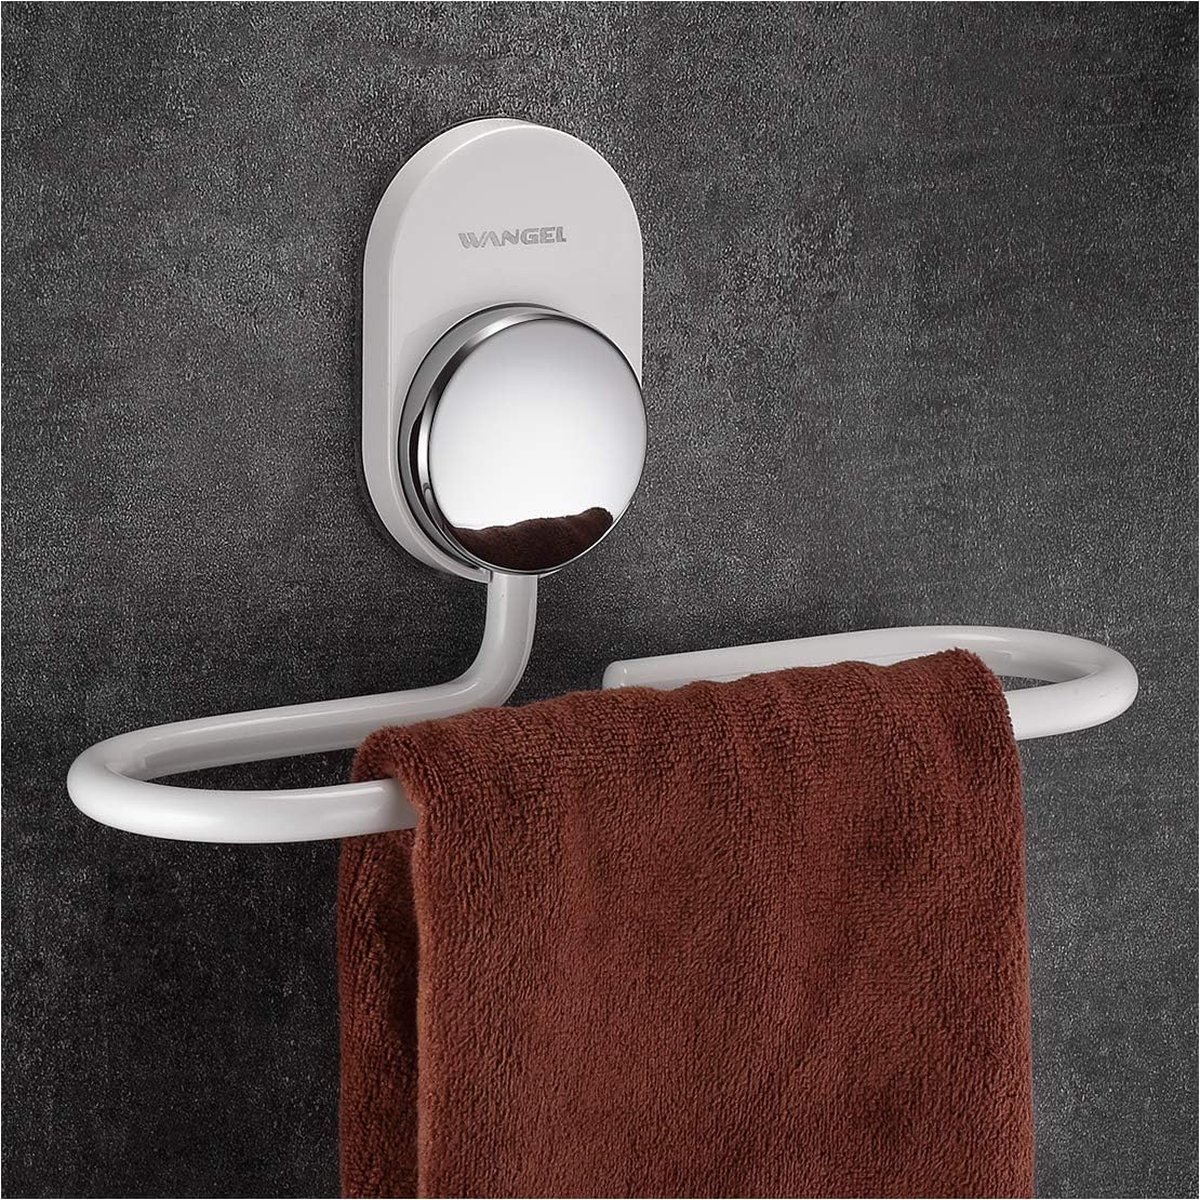 Handdoekring zonder boren, handdoekhouder, transparant, hechtende lijm, aluminium, wit